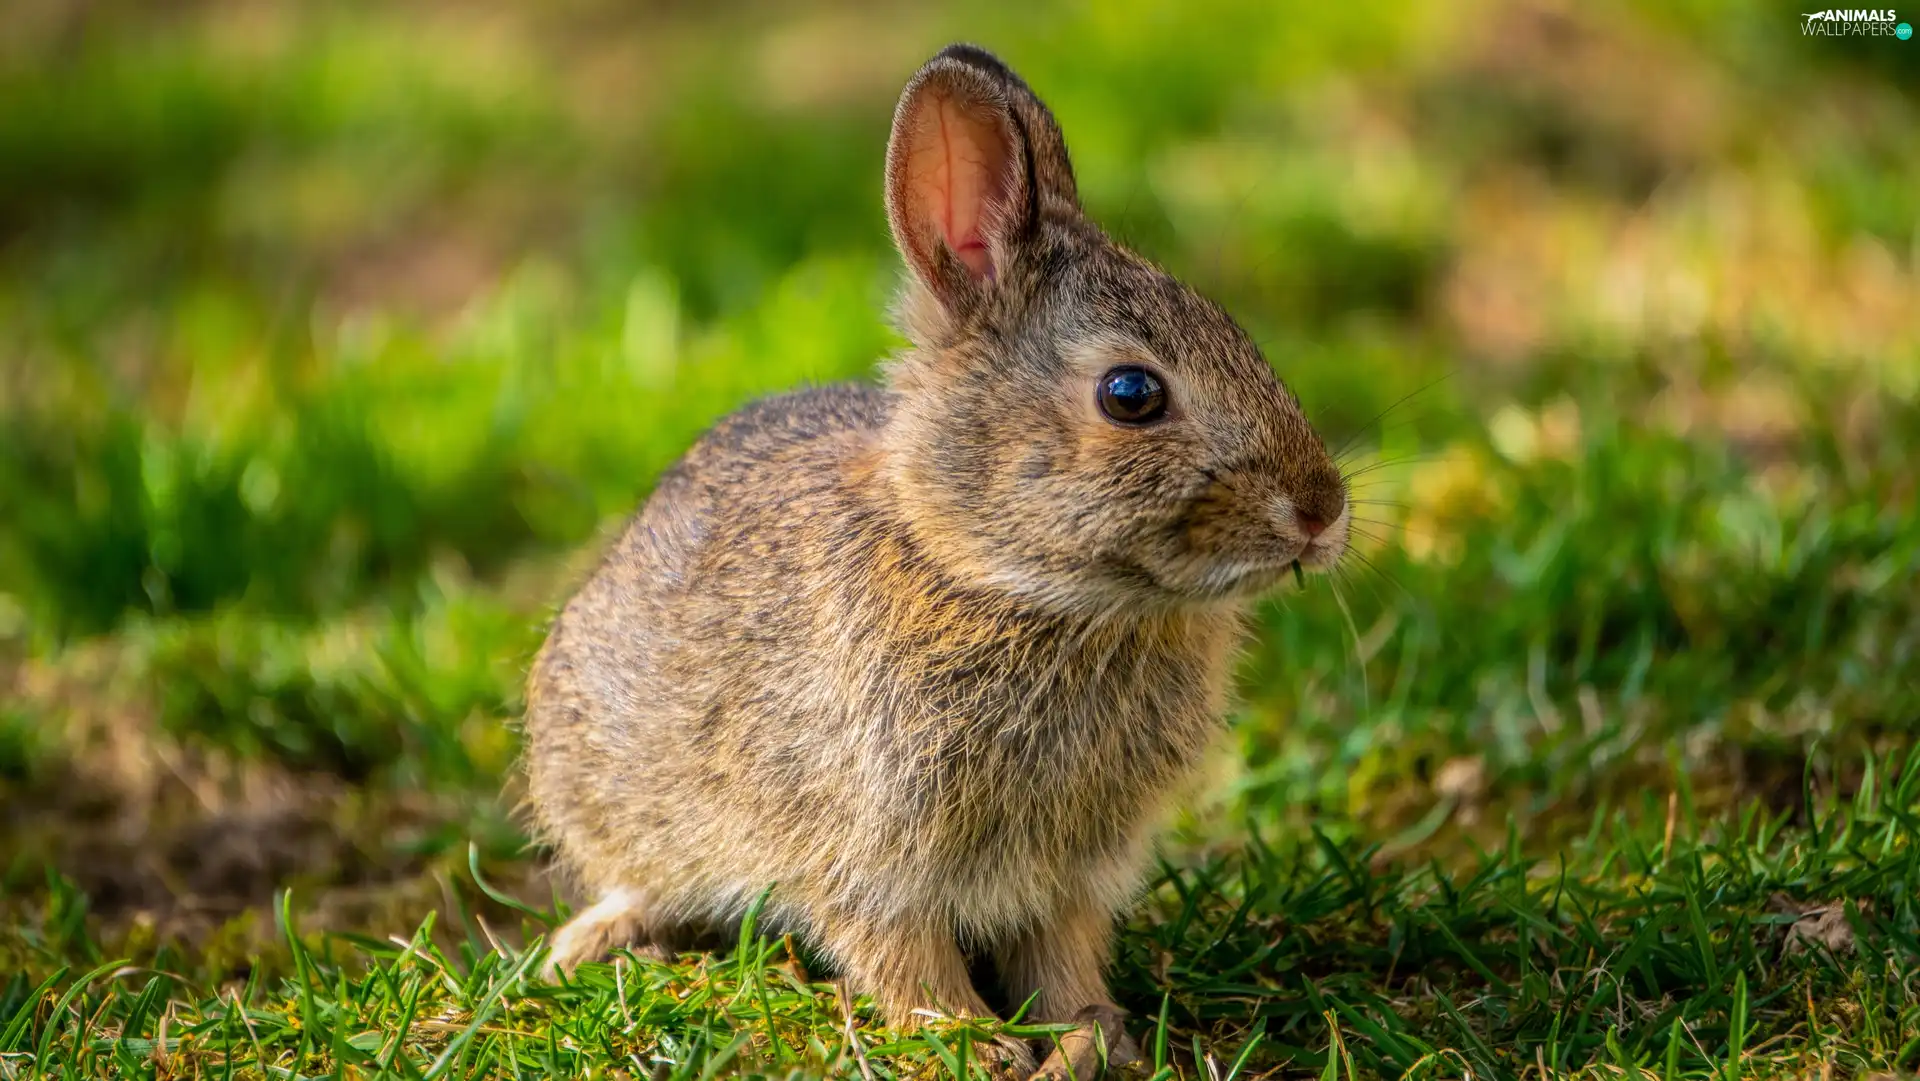 Rabbit, ears, grass, standing